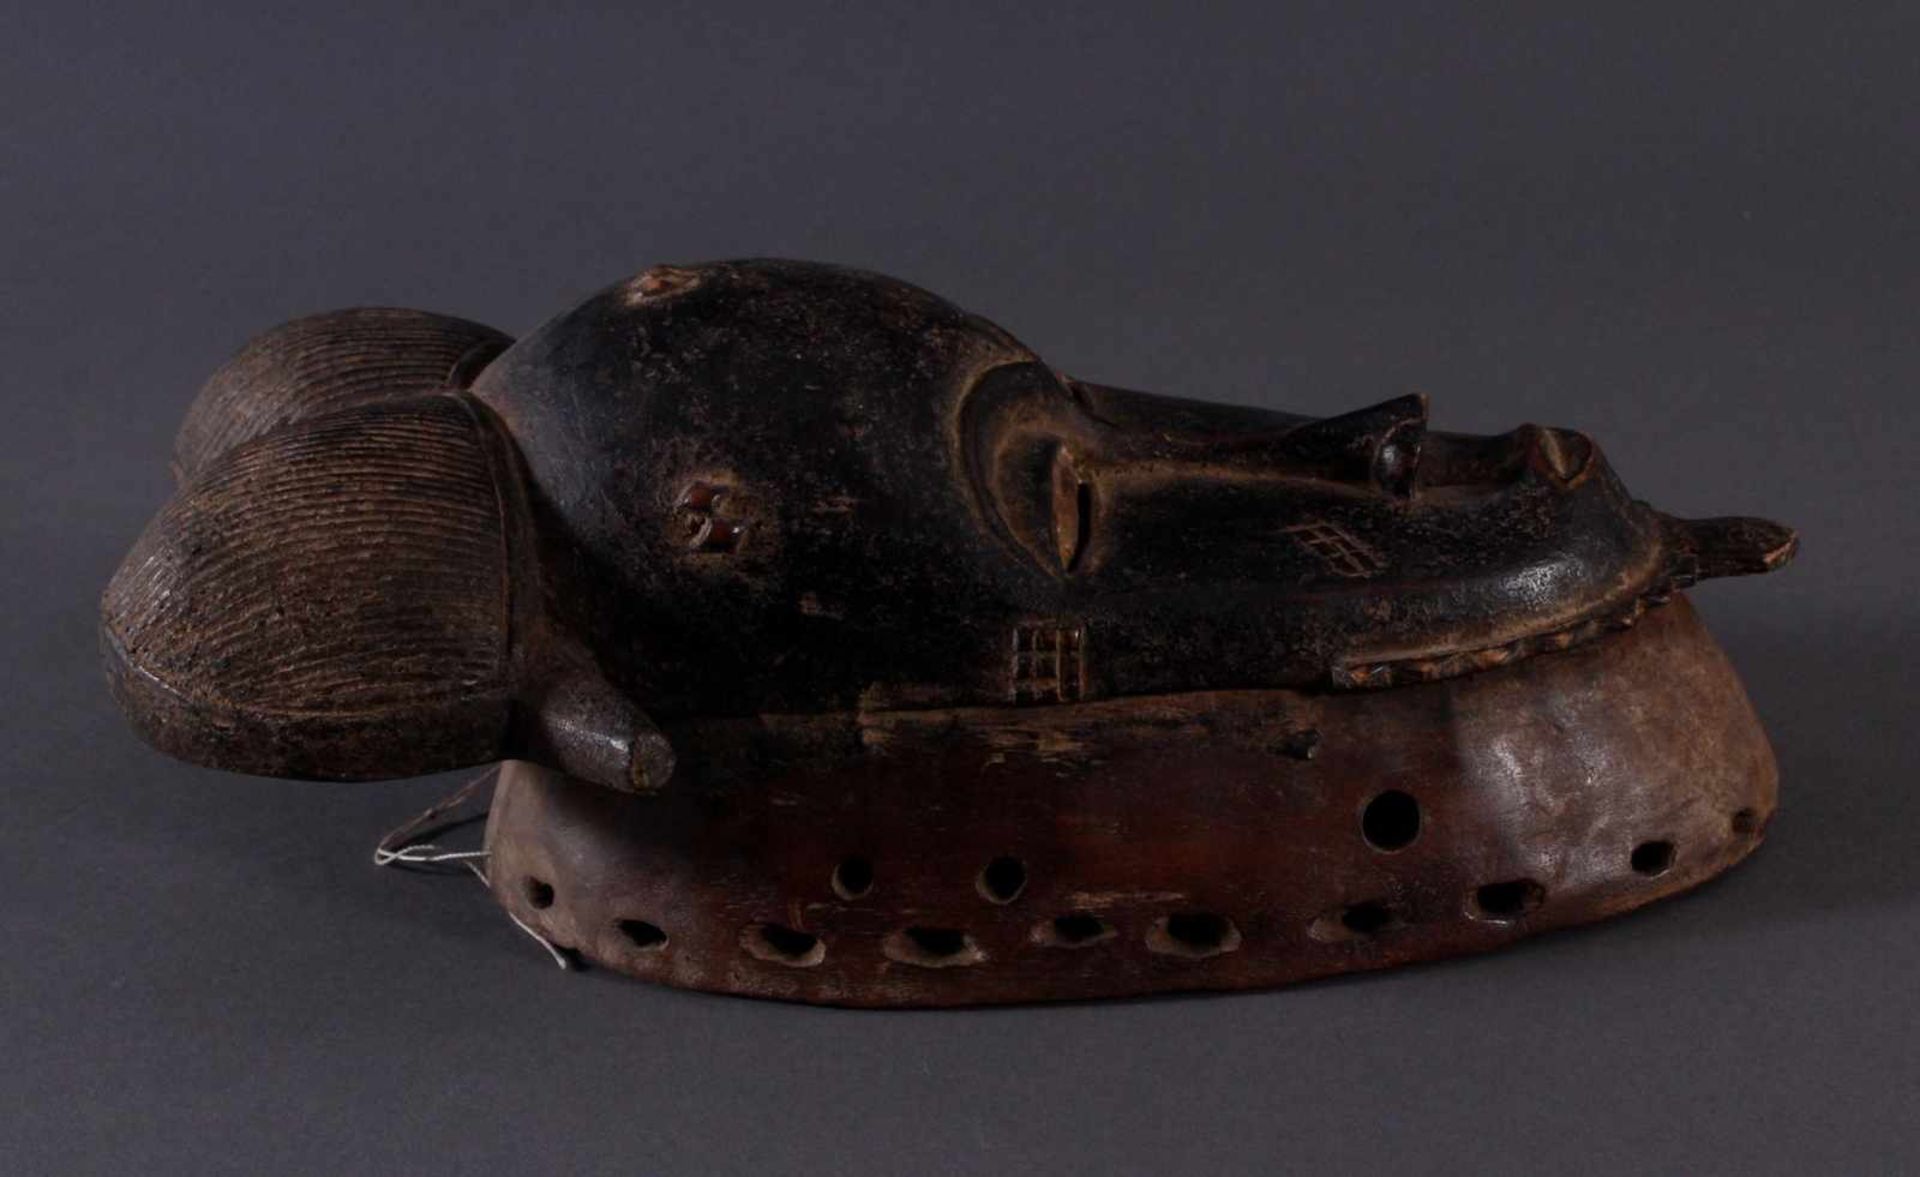 Antike Maske, Baule, Elfenbeinküste 1. Hälfte 20. Jh.Holz geschnitzt, dunkle Patina, Haar-Spitze - Bild 2 aus 4